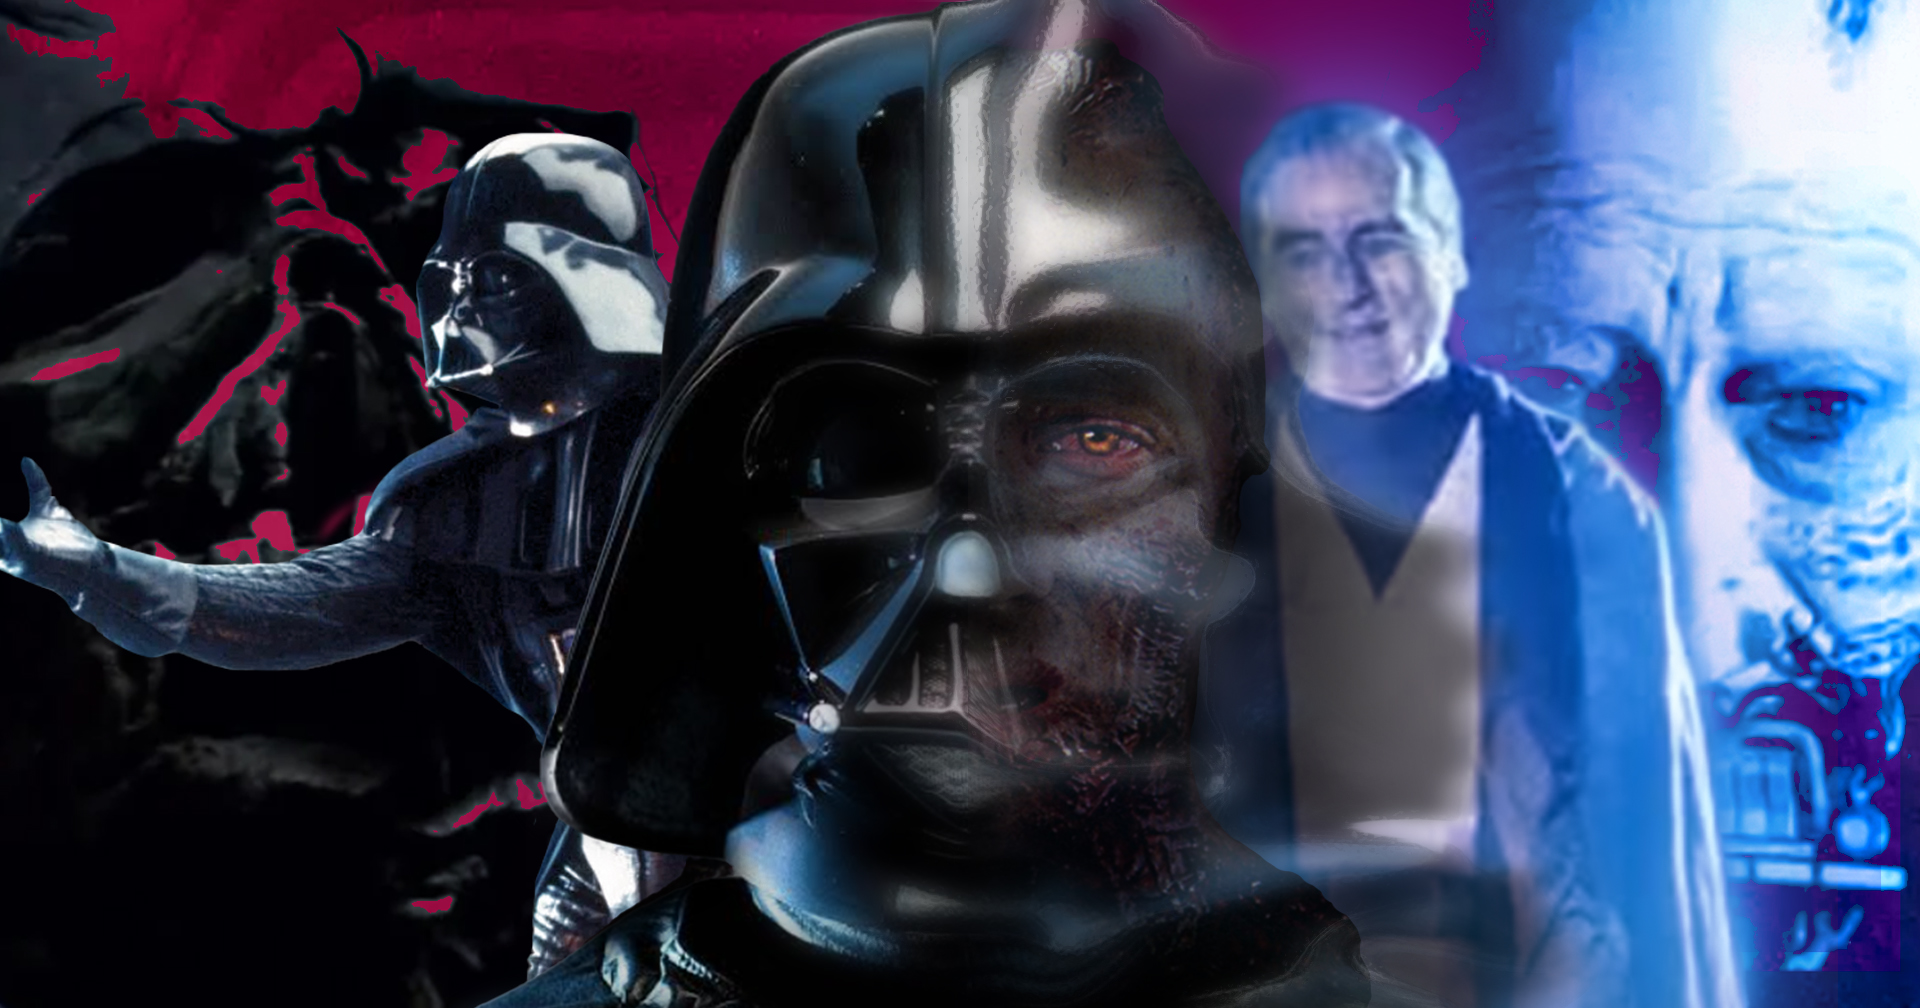 ทำความรู้จัก Darth Vader วายร้ายแห่งจักรวาล Star Wars ที่ทุกคนชื่นชอบ